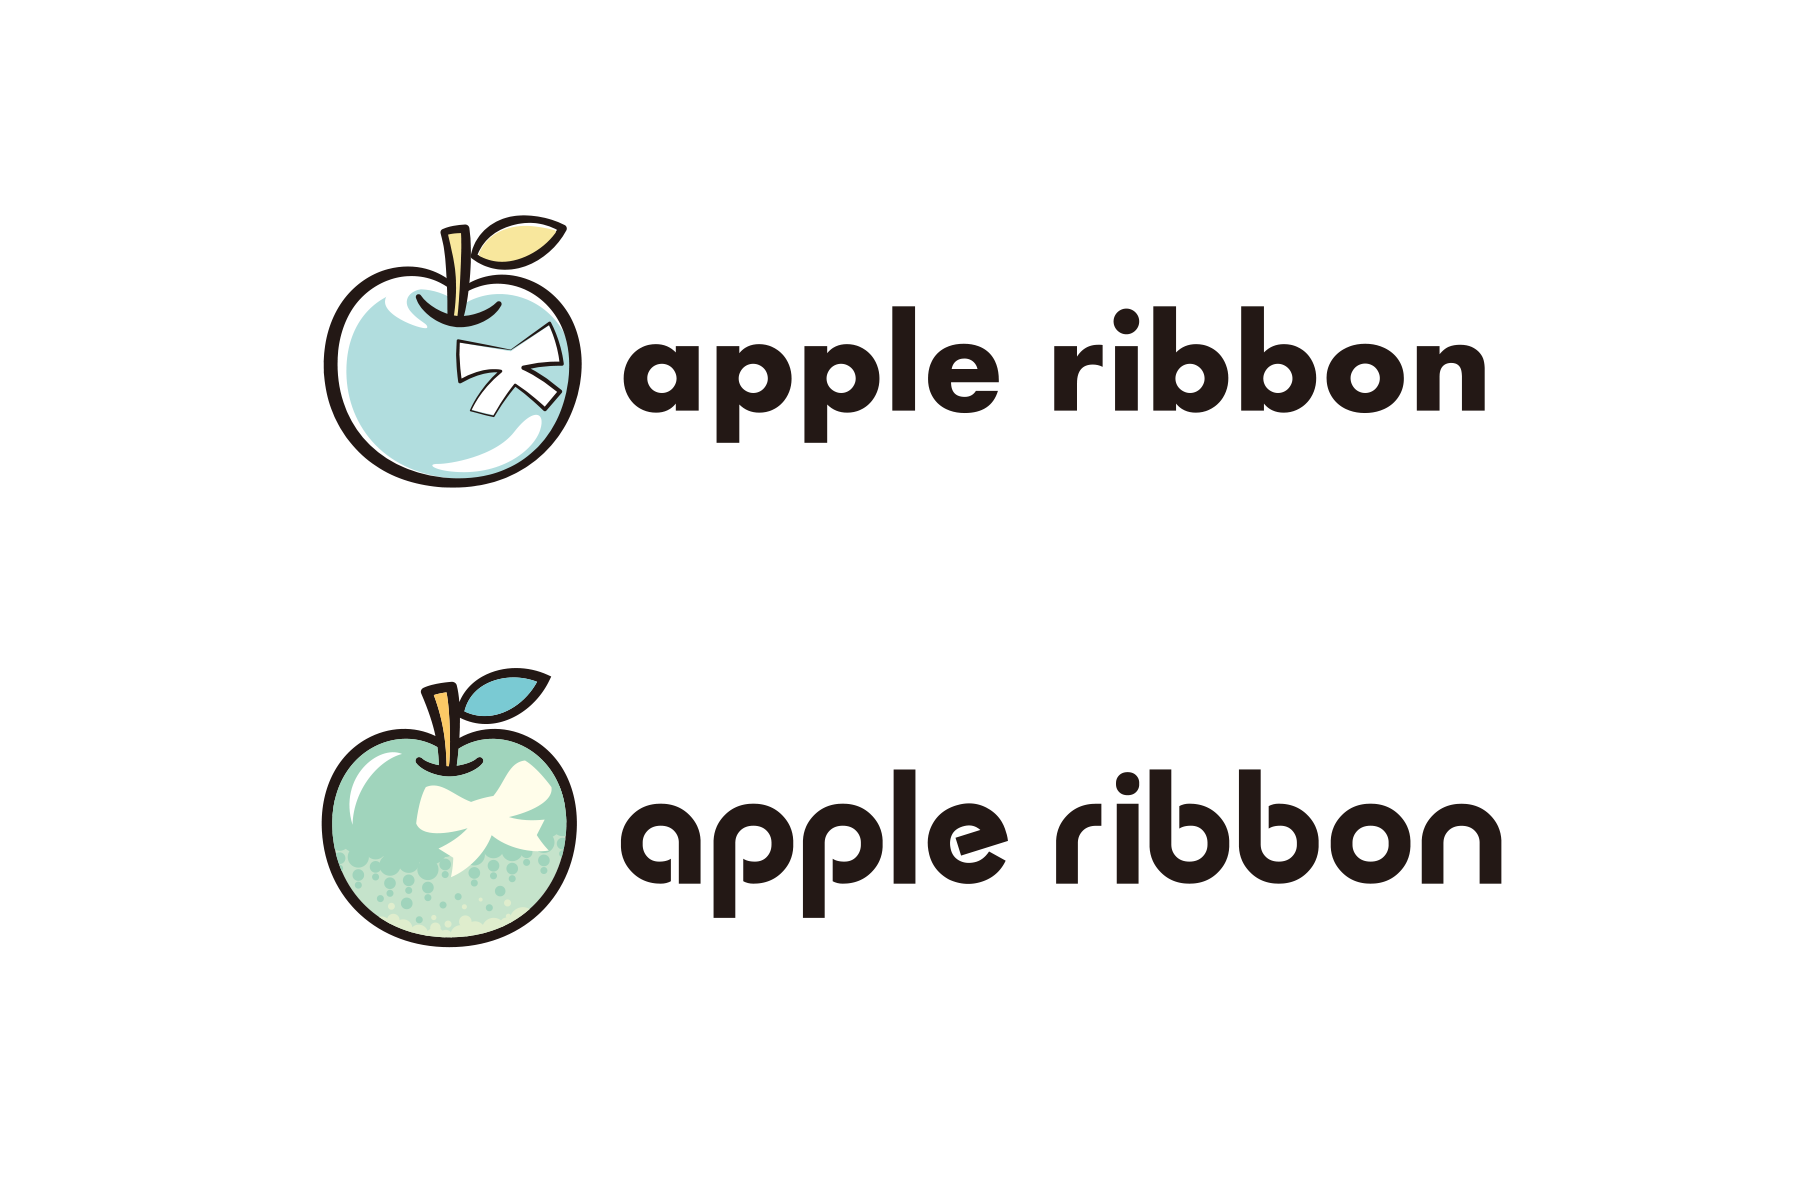 株式会社apple ribbon